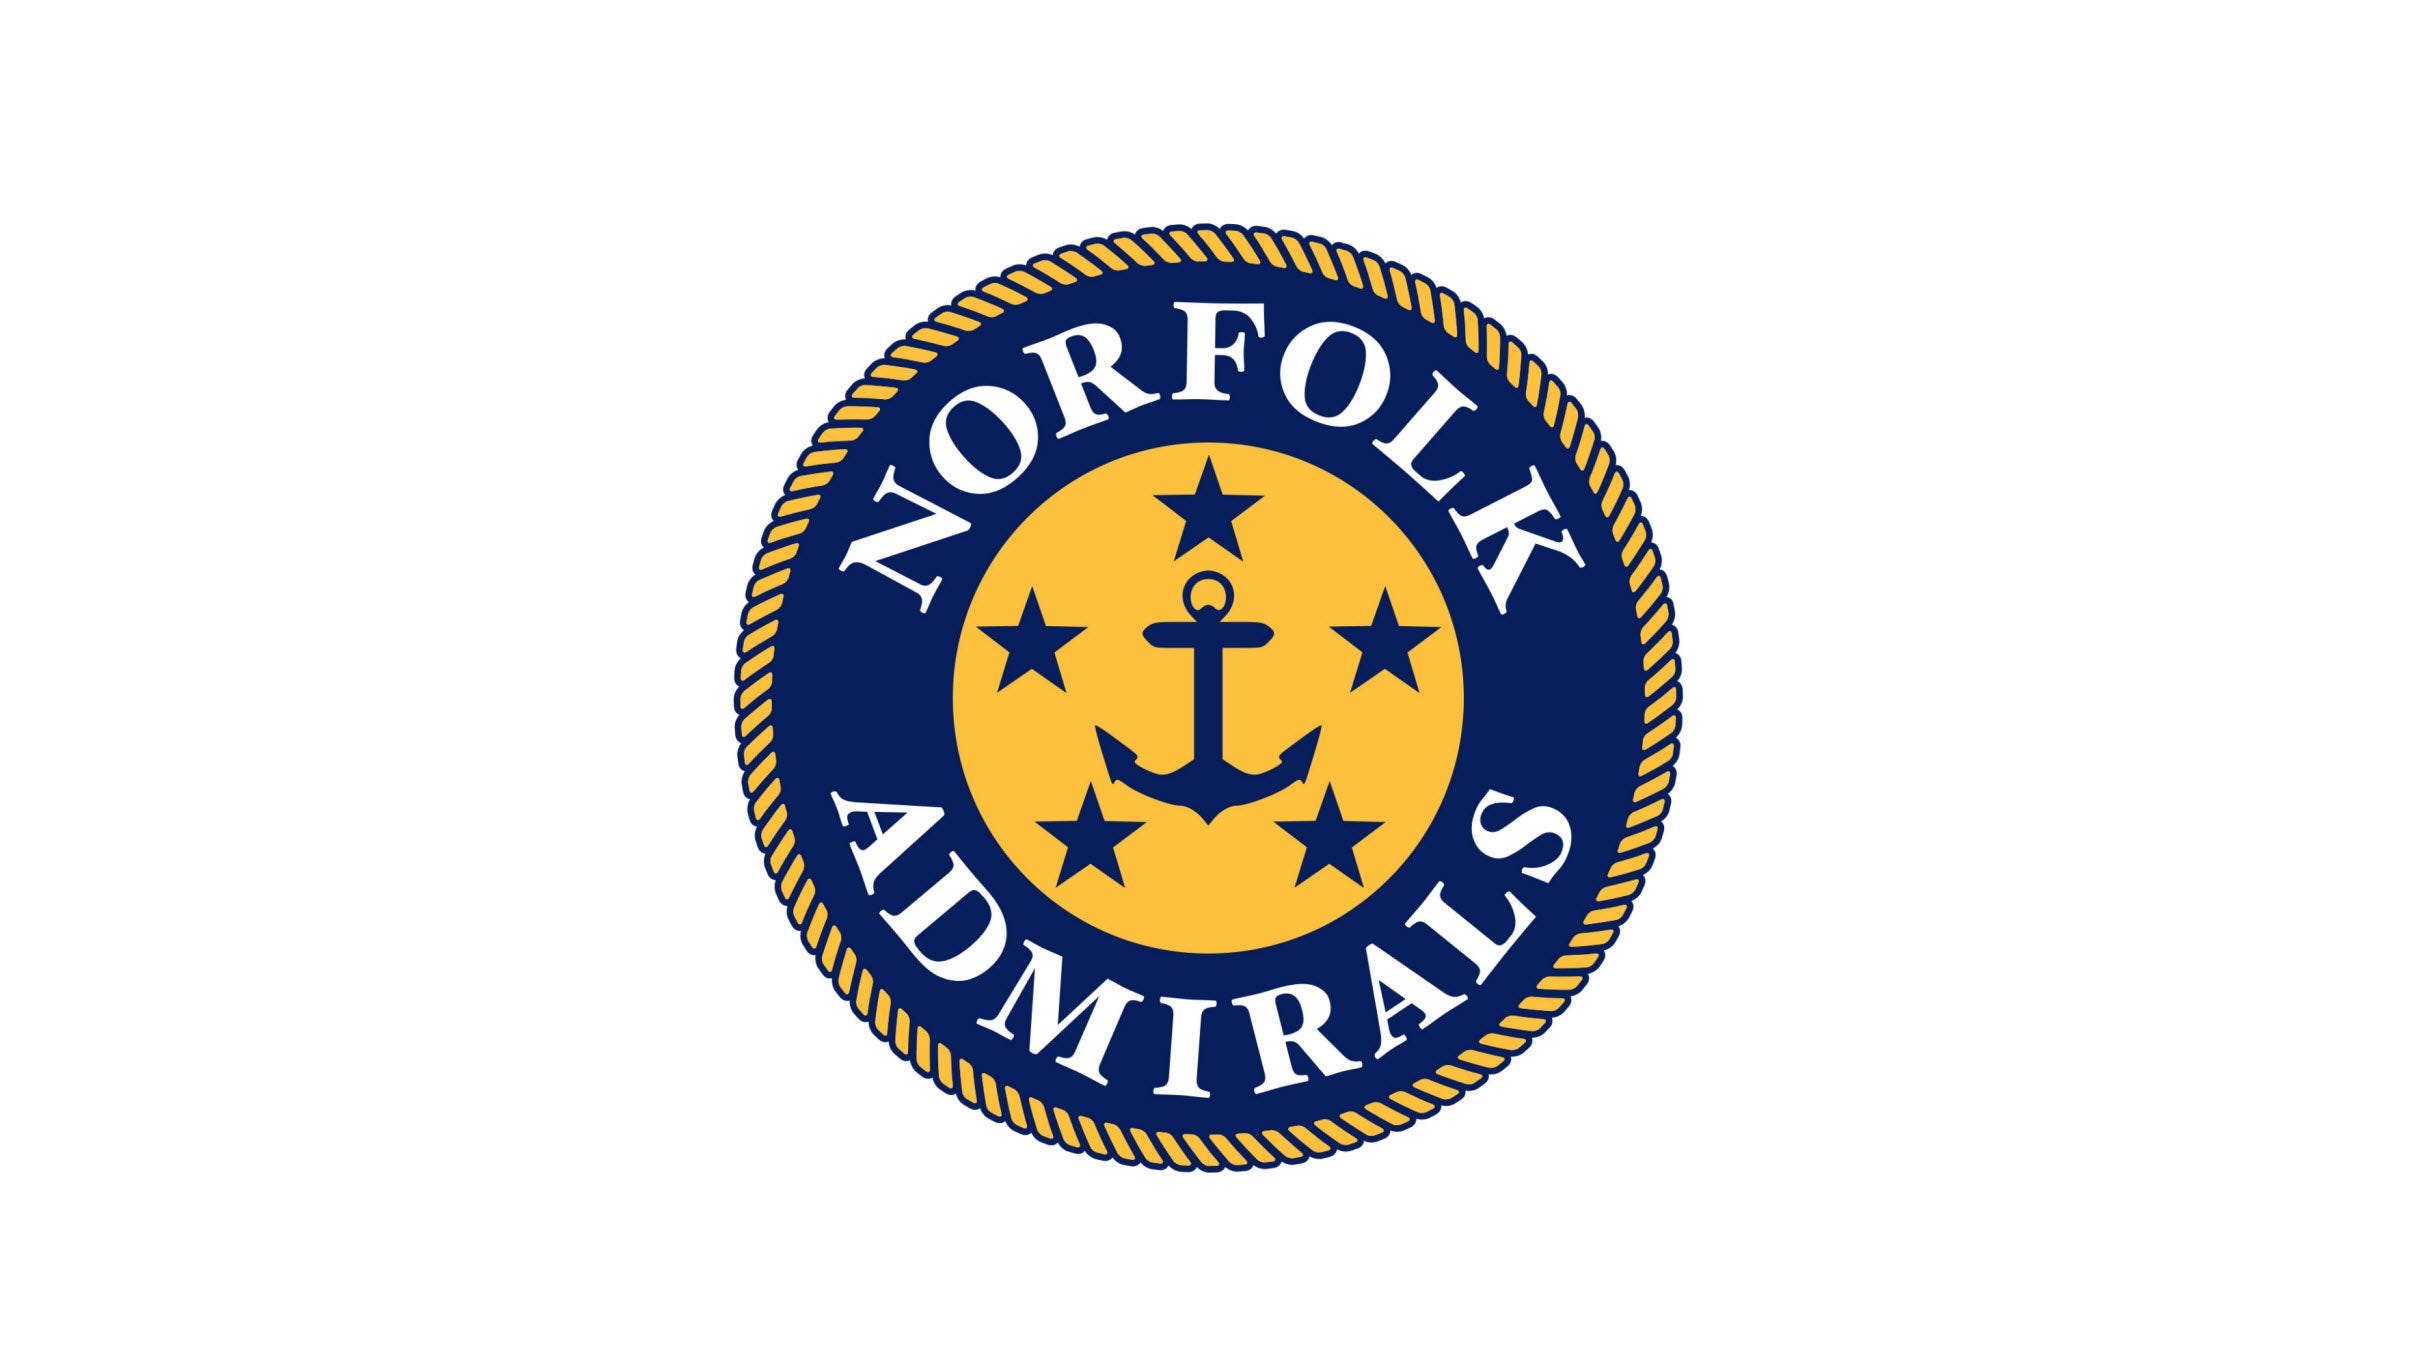 Norfolk Admirals Playoffs Round 2, Game 4 at Scope Arena